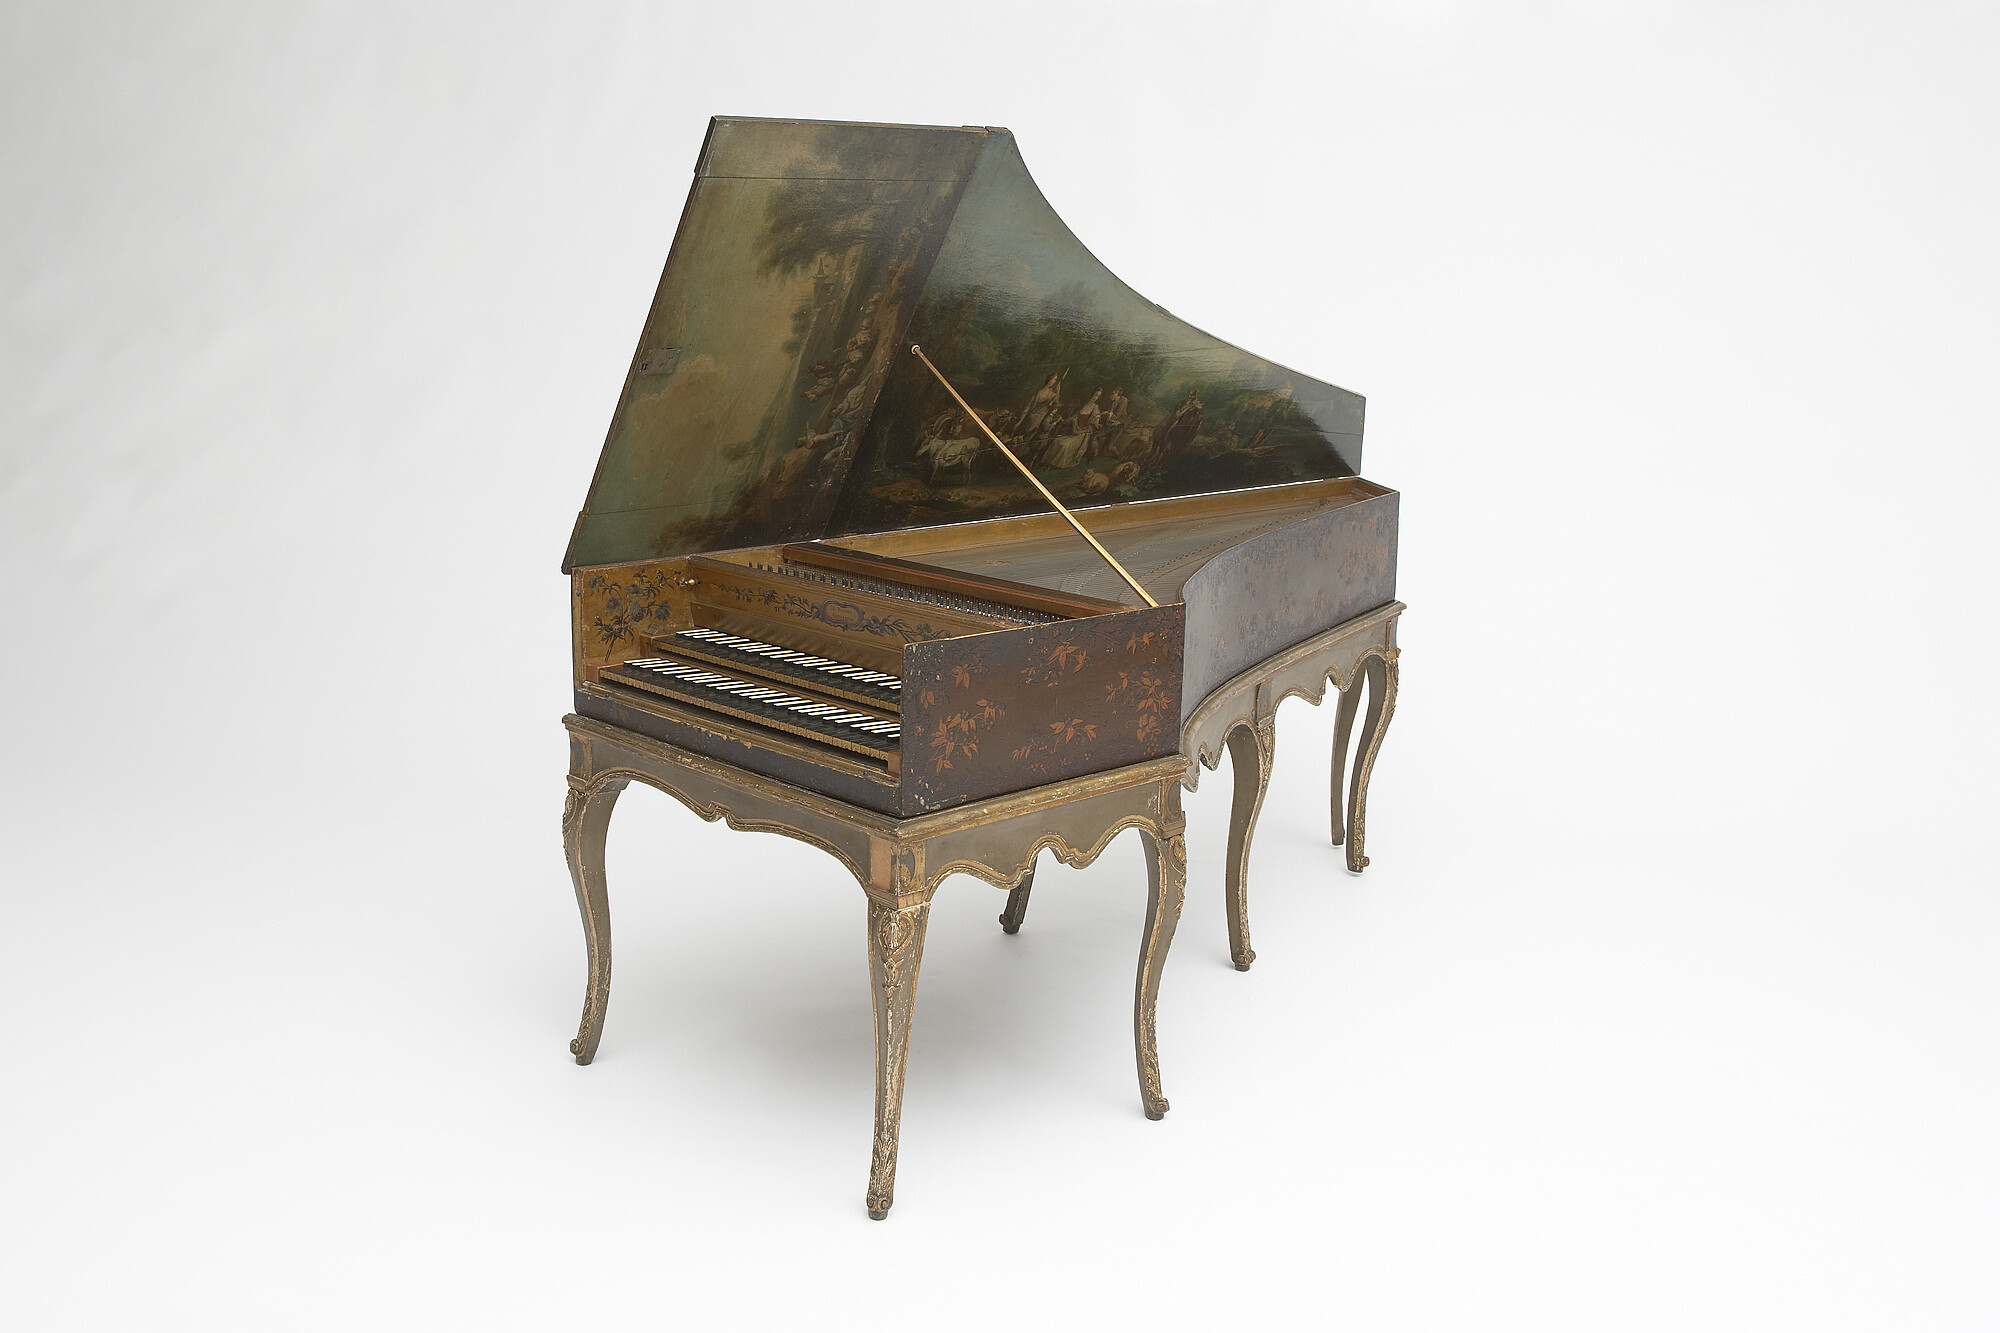 Harpsichord, By François Etienne Blanchet the Elder, ca. 1740, Chordophone, Photo credit: Alex Contreras